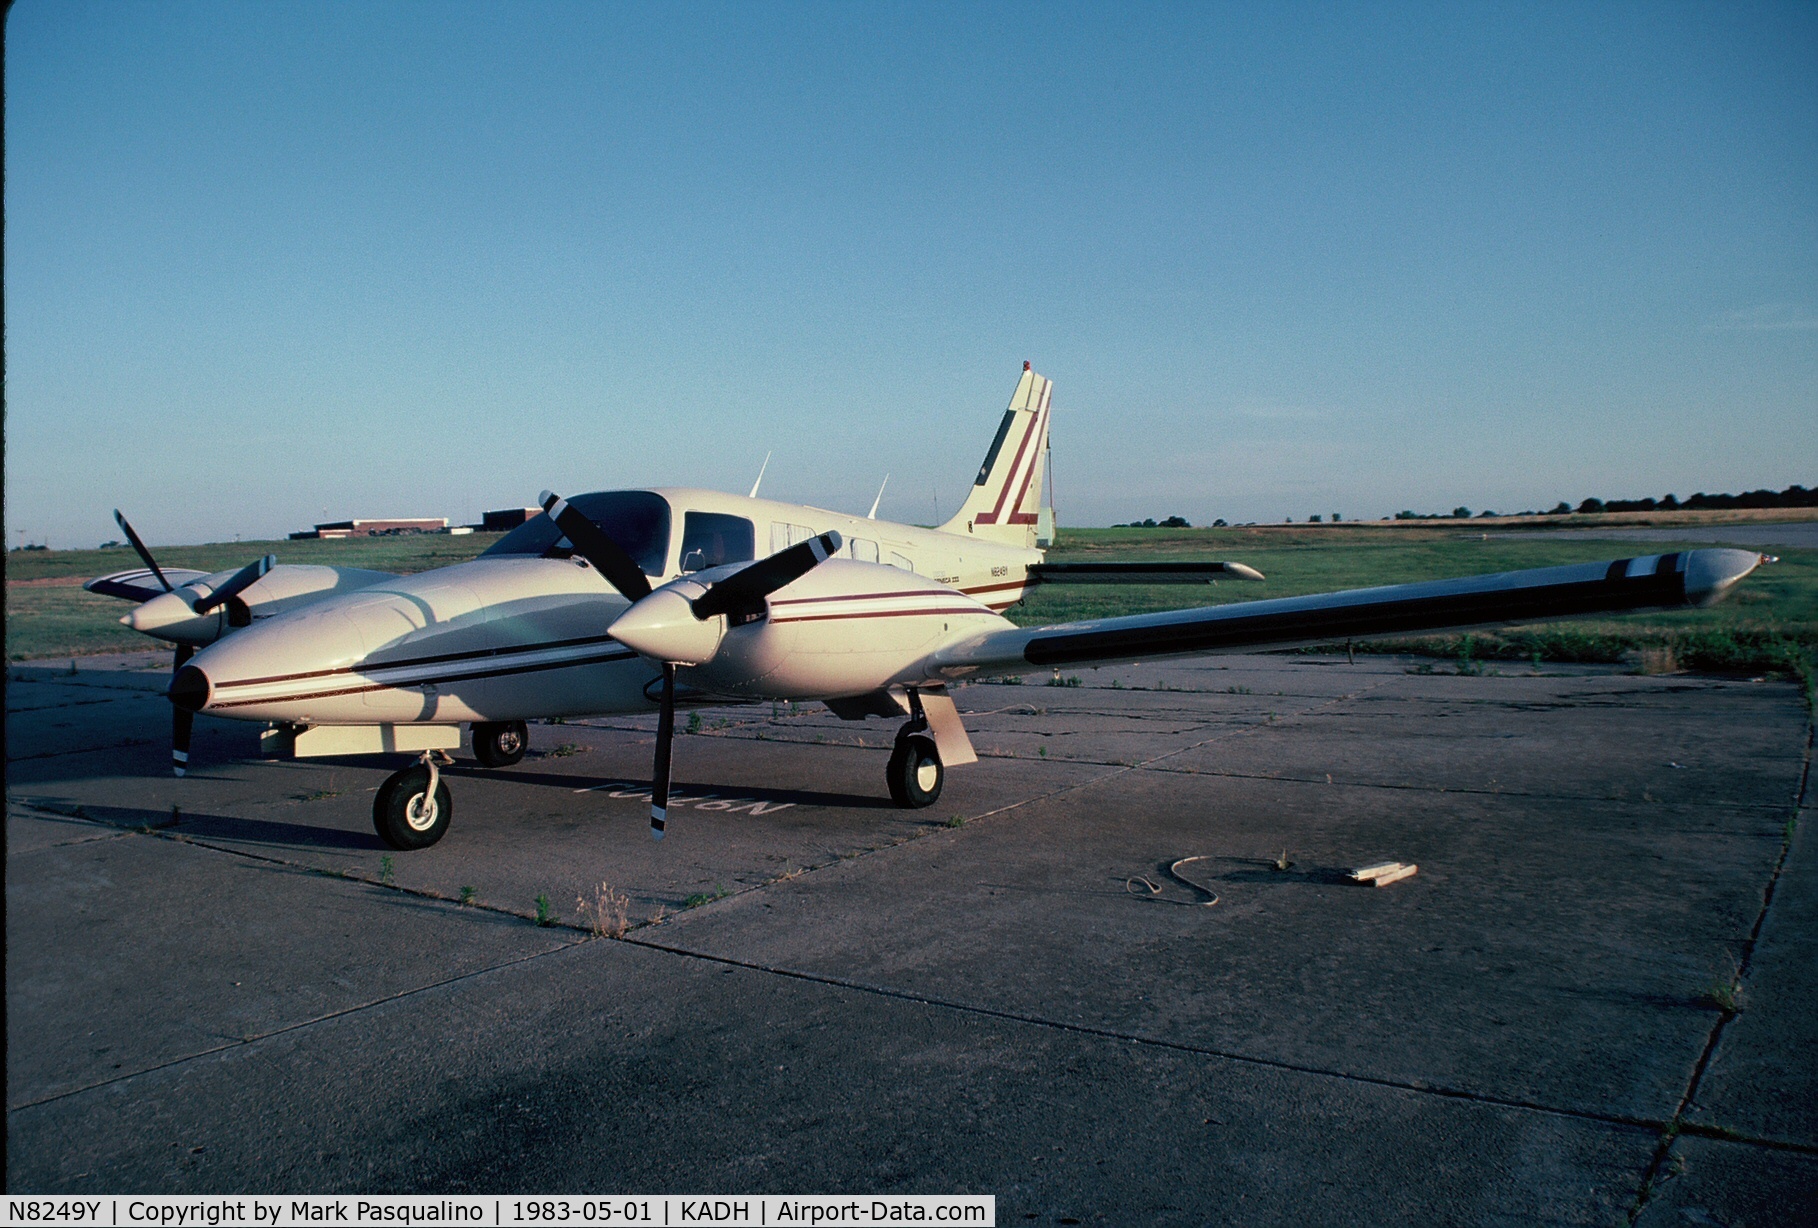 N8249Y, Piper PA-34-220T C/N 348233175, Piper PA-34-220T